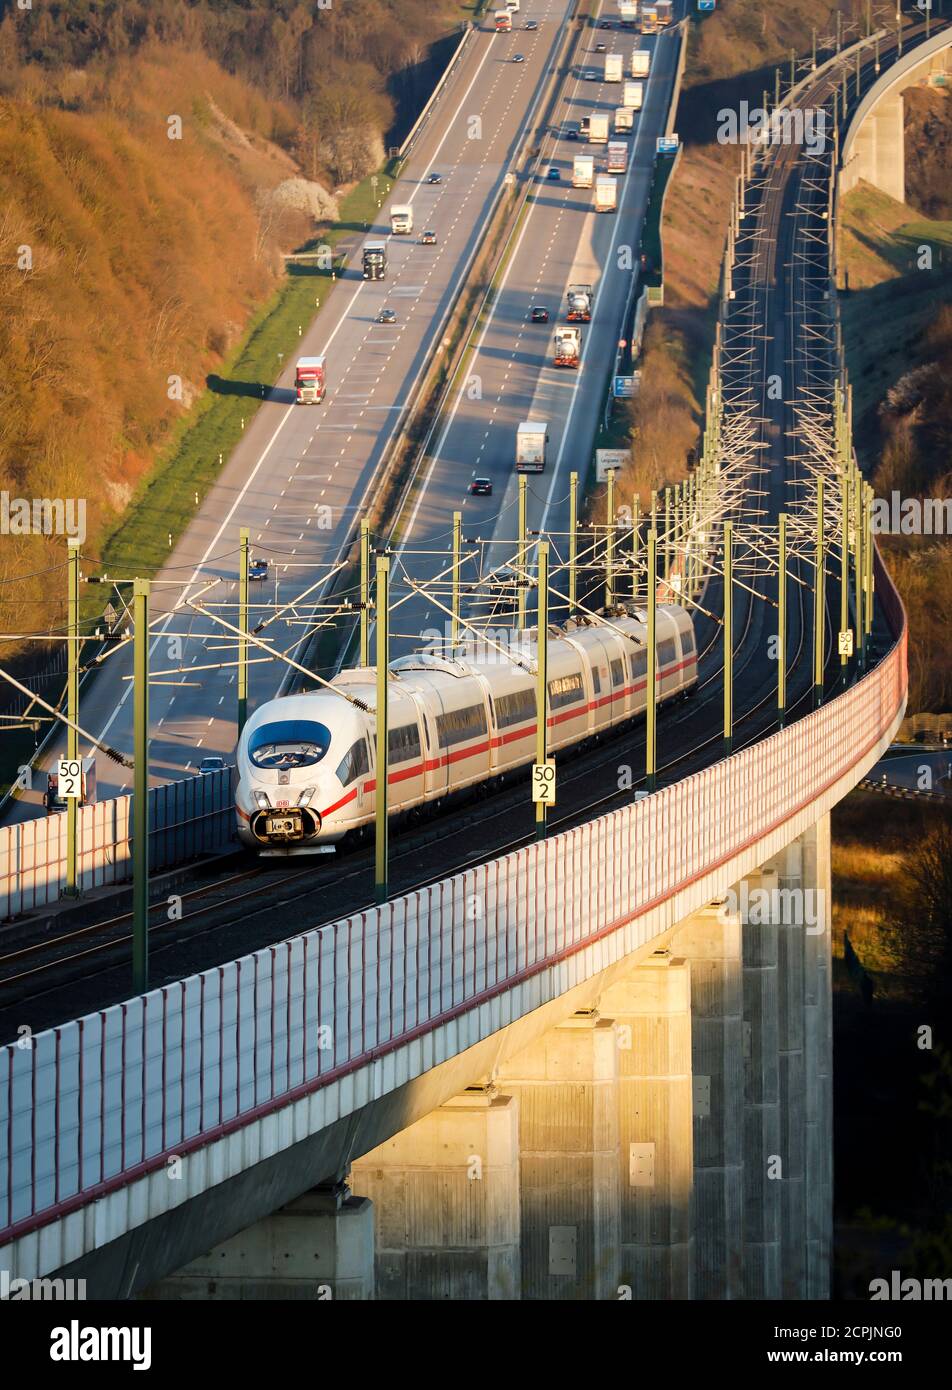 IL treno ICE della Deutsche Bahn AG opera sulla linea ad alta velocità Colonia-Francoforte, mentre le auto e i camion percorrono l'autostrada A3, Neustadt Wied, Foto Stock